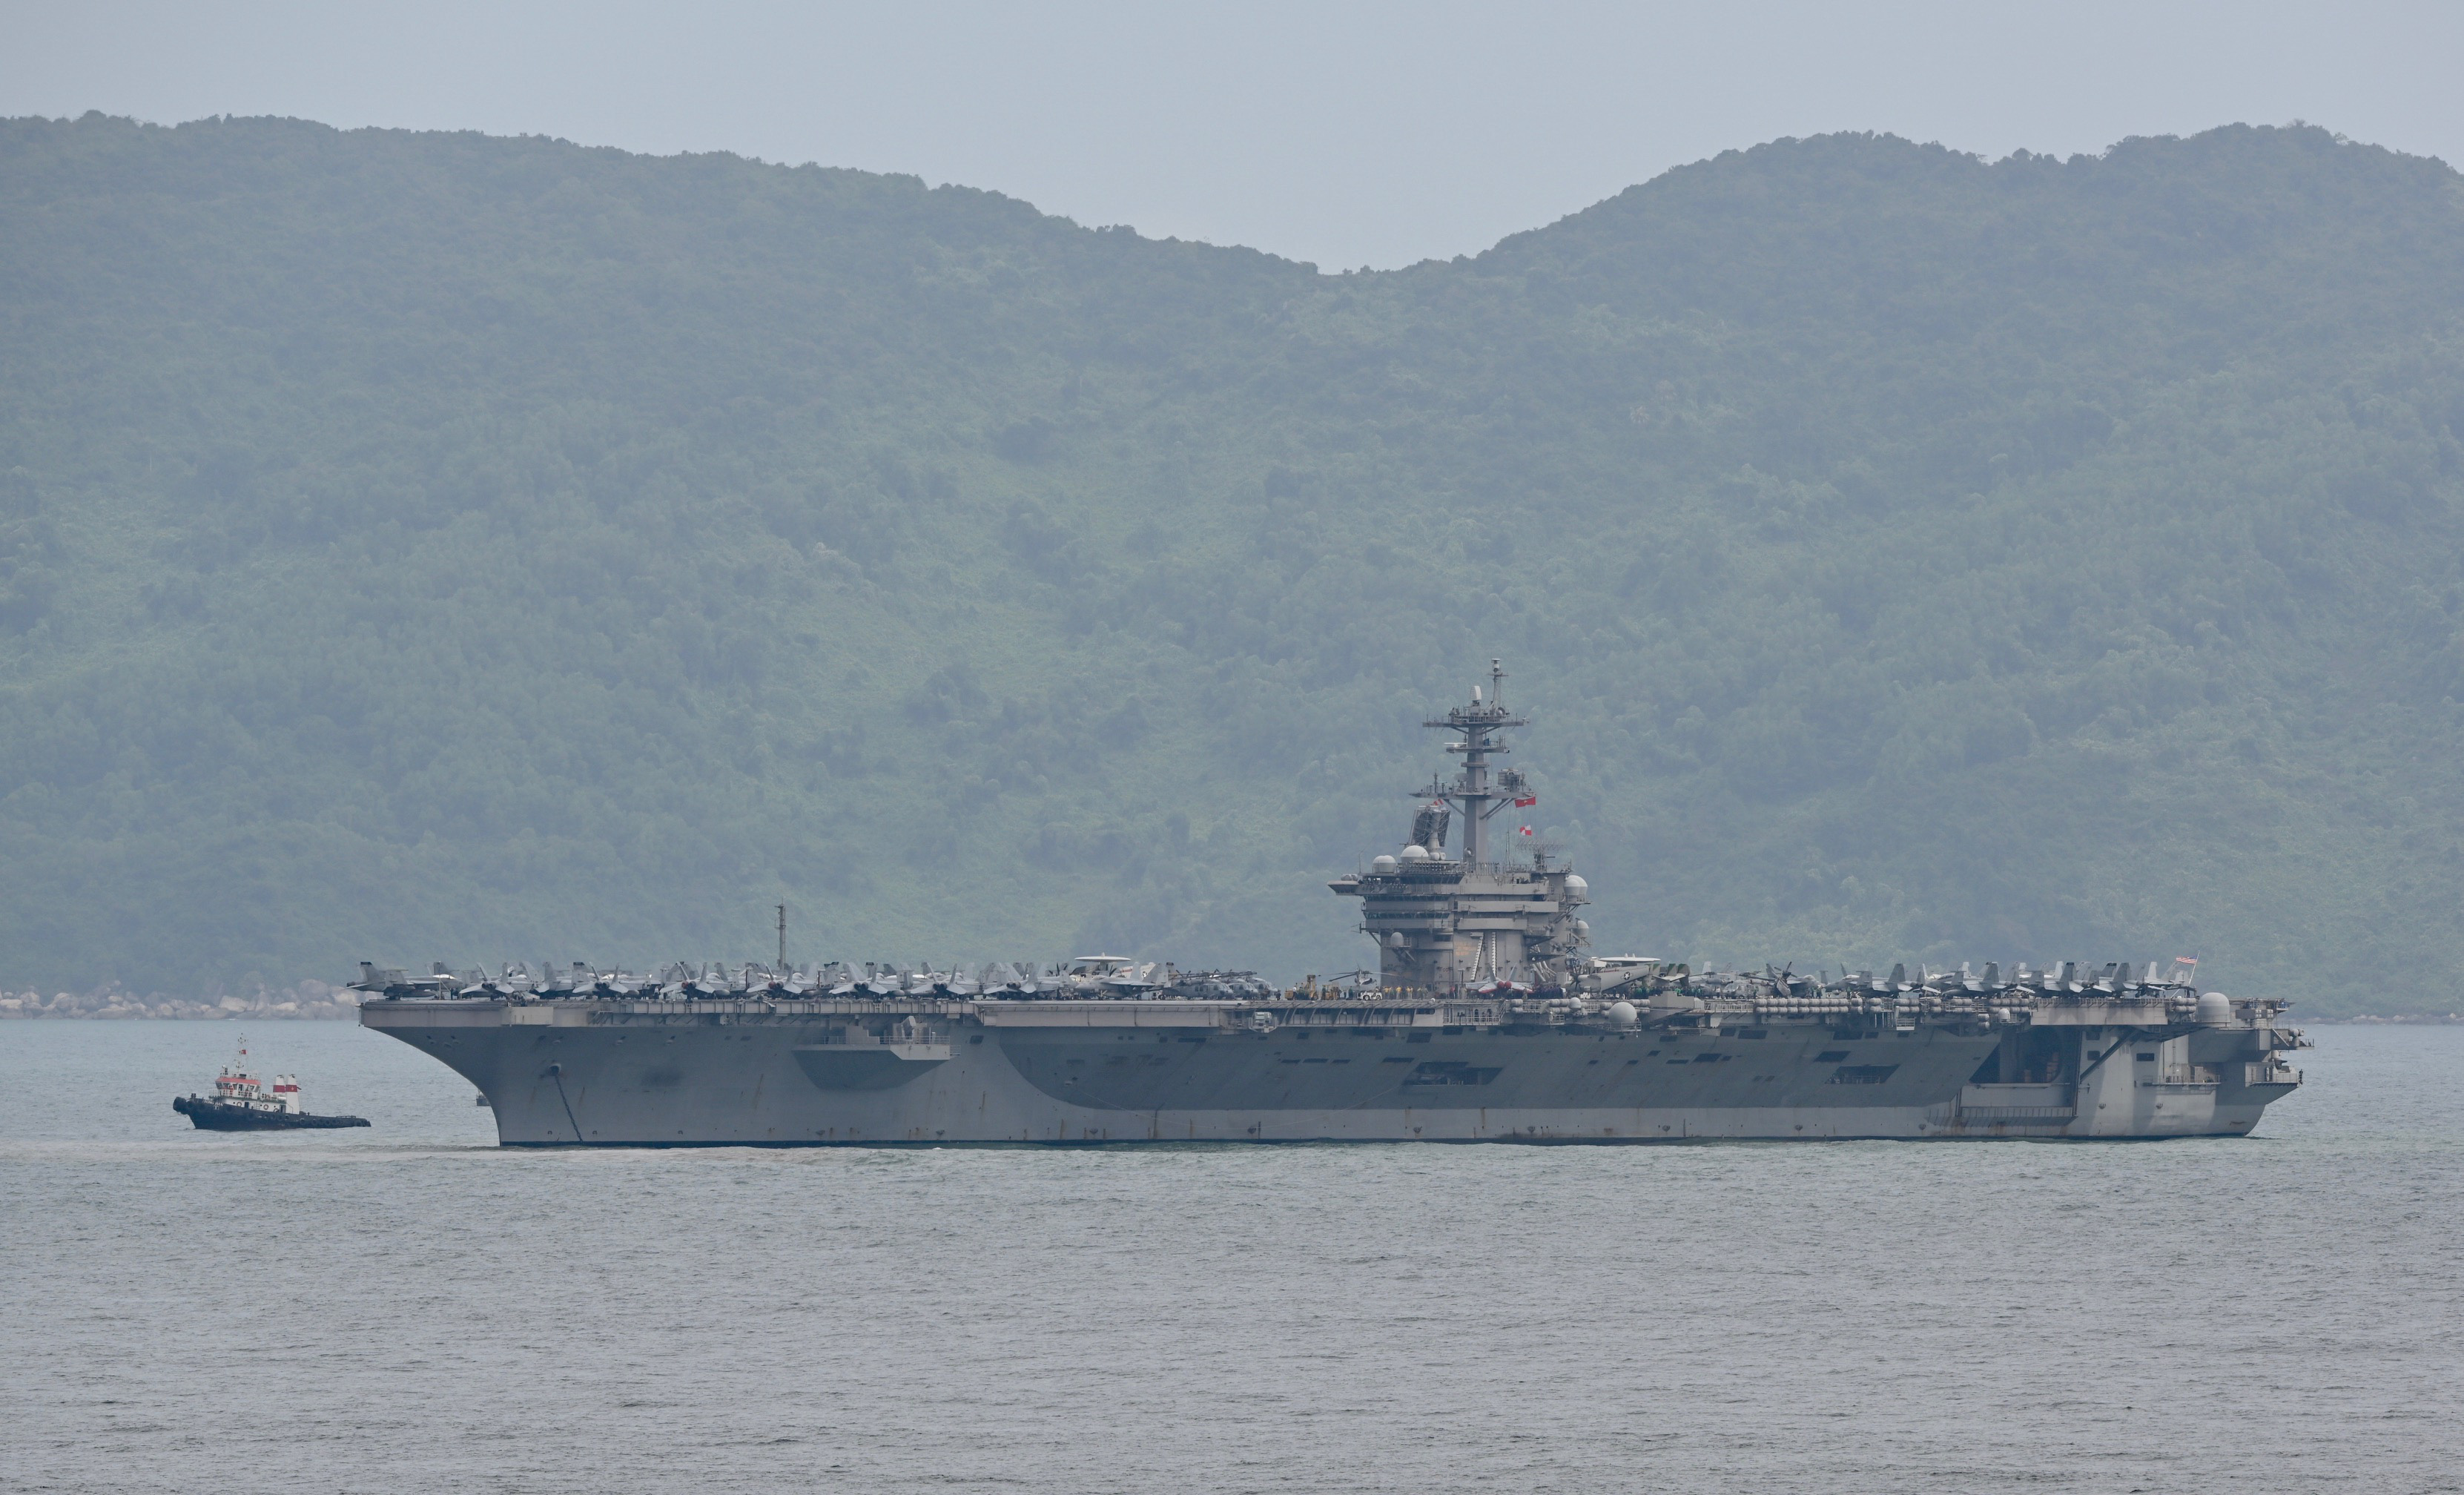 "邦克山"号导弹驱逐舰目前已经靠泊在岘港港口,人们可以直接从港口登